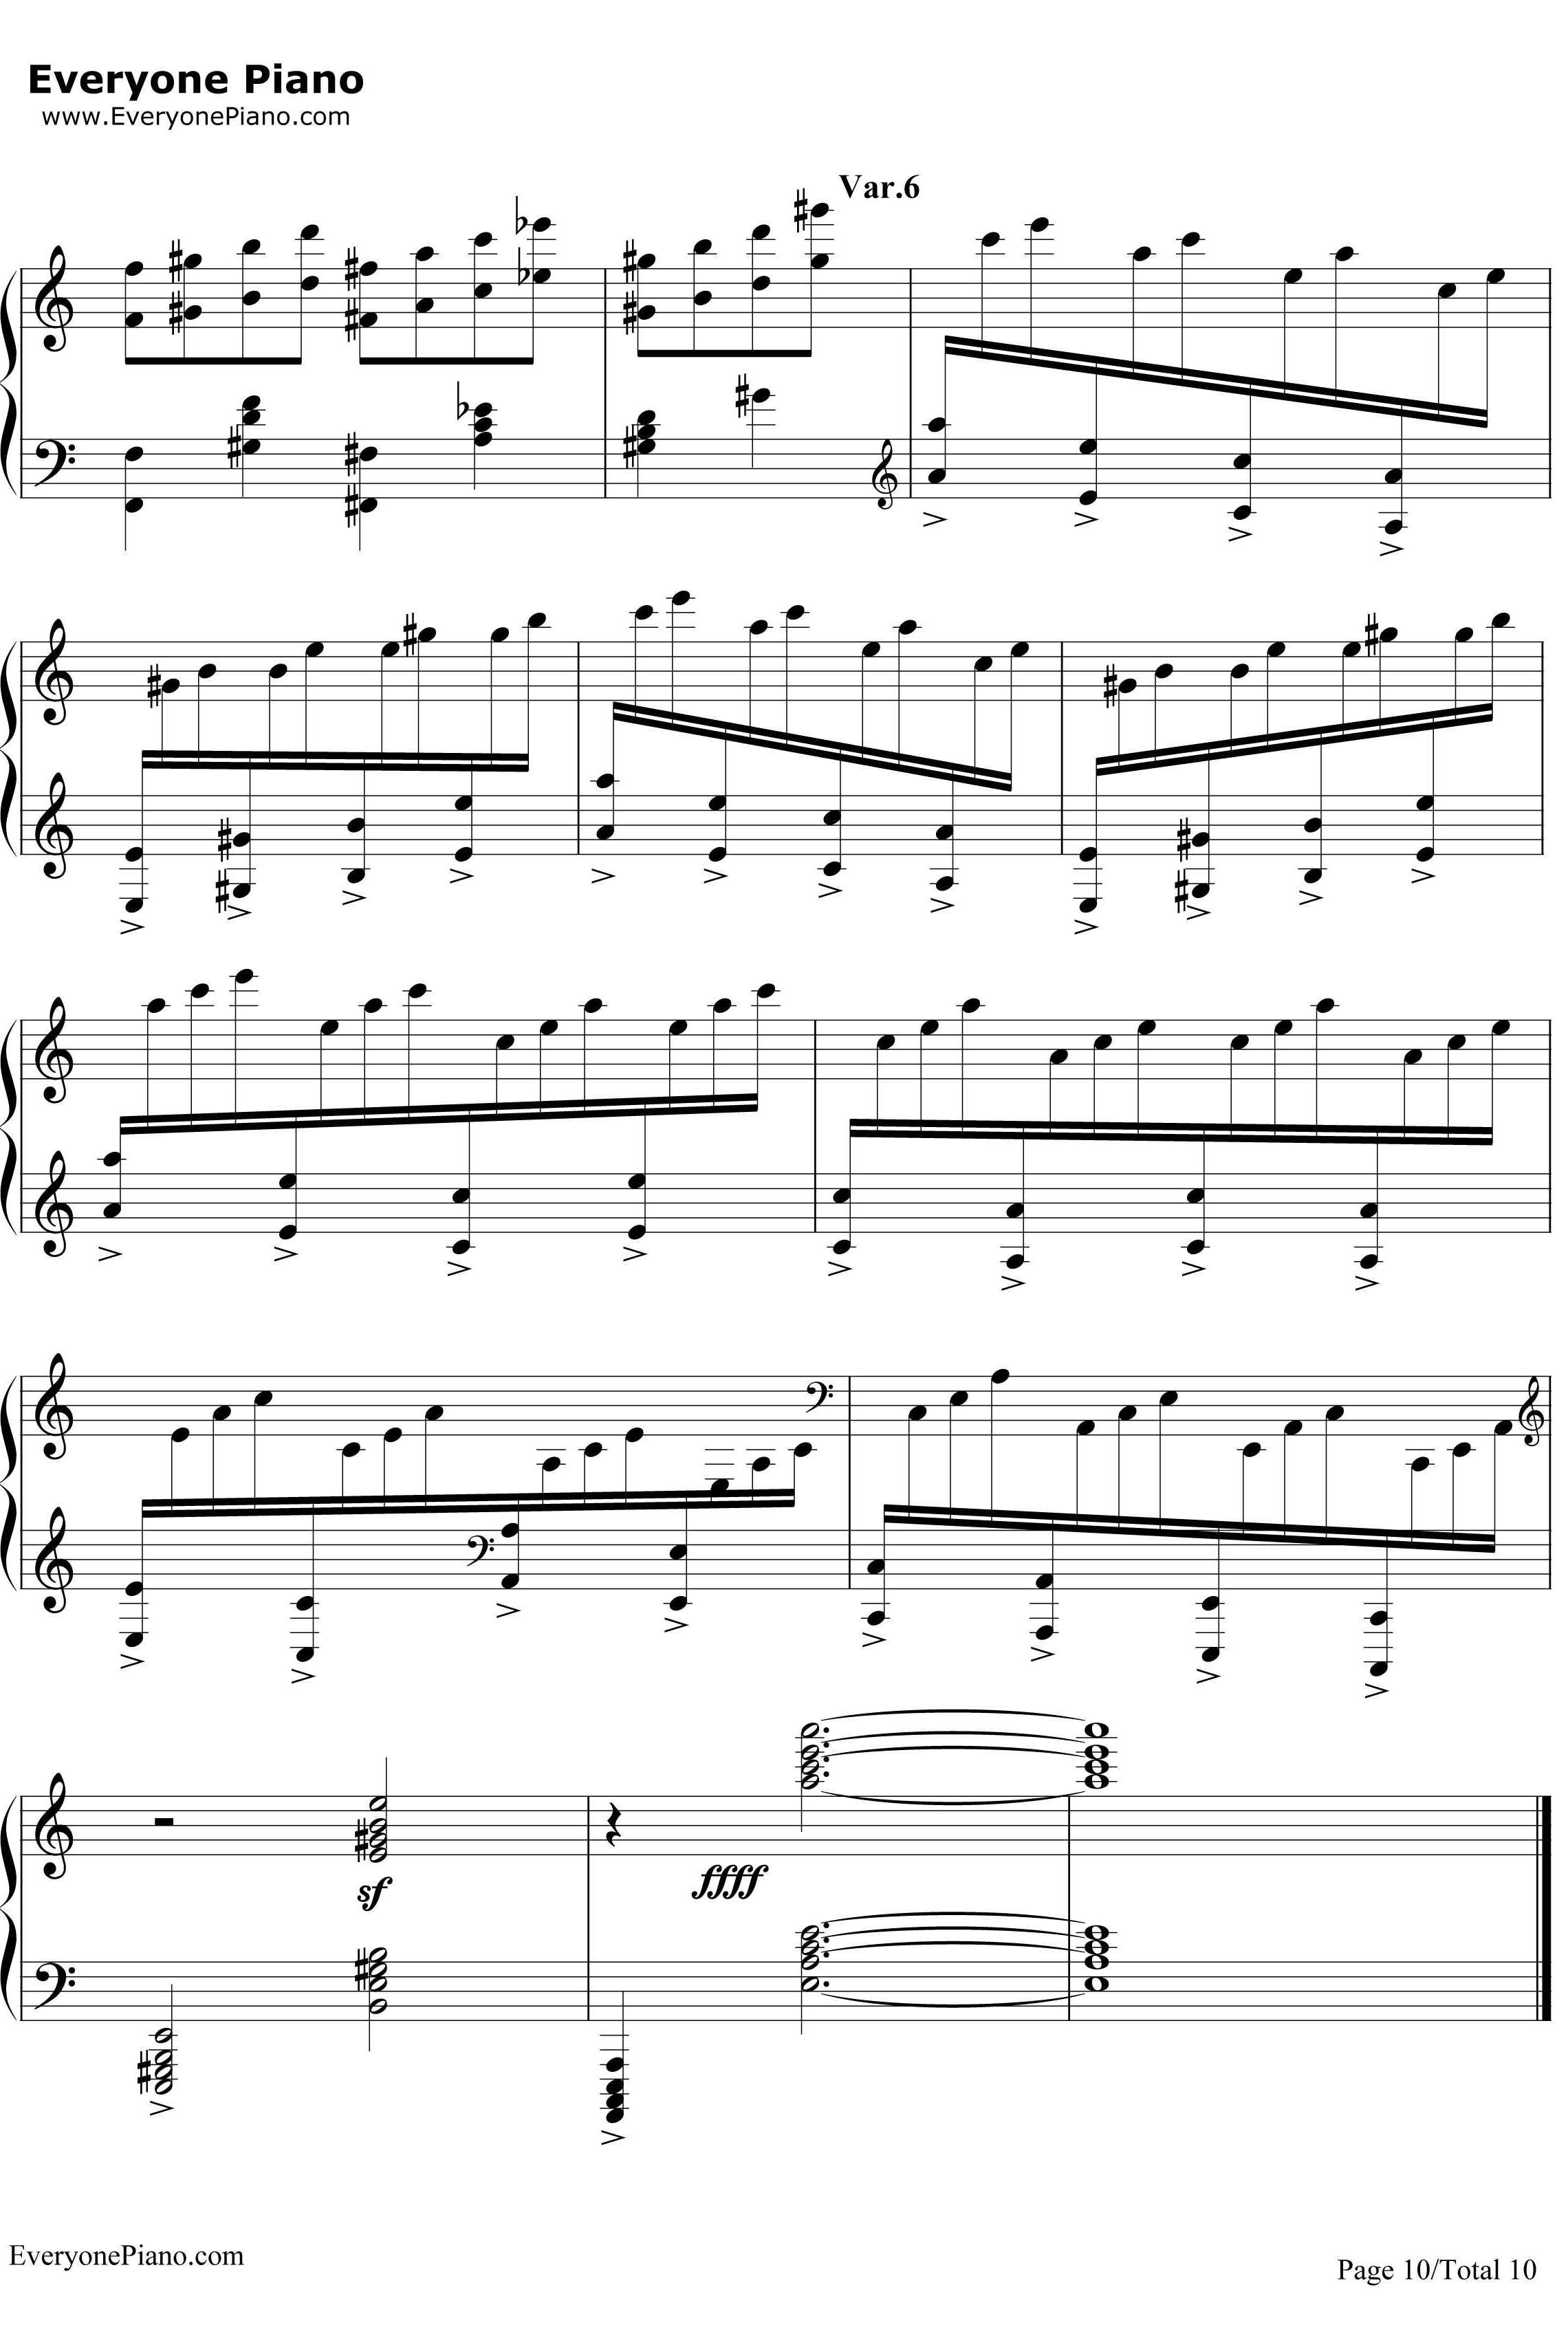 帕格尼尼飞絮曲钢琴谱-马克西姆10